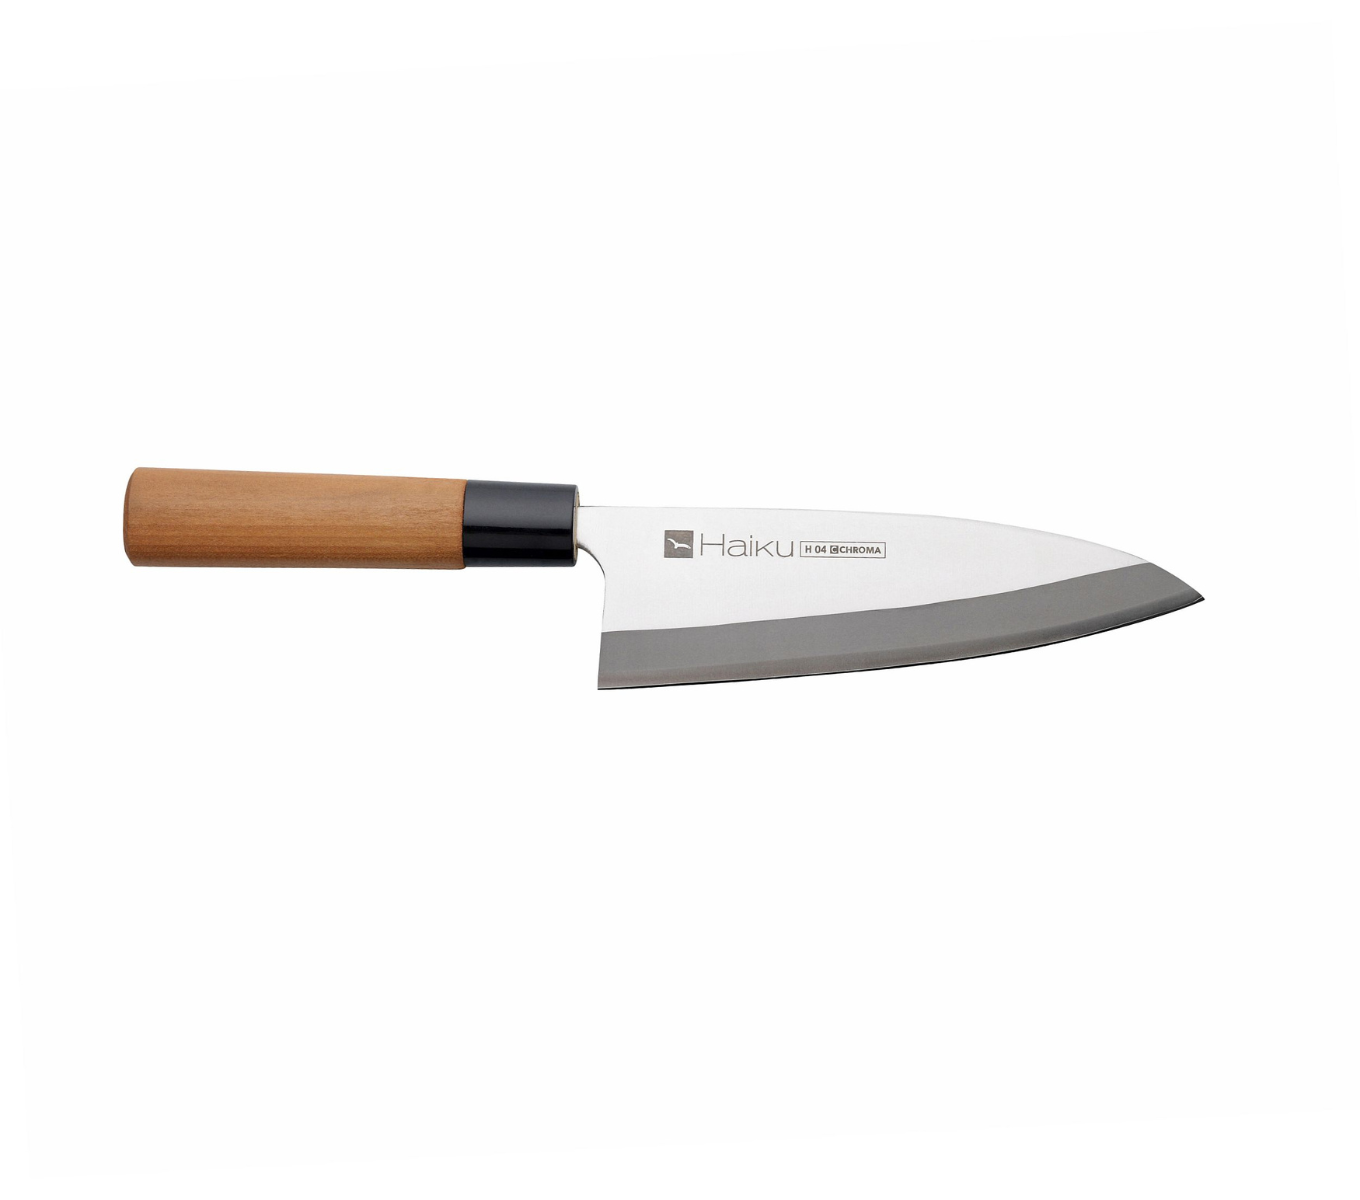 Das Deba ist das traditionelle Messer, um Fisch zu filitieren sowie Fische und Meeresfrüchte zu zerteilen.